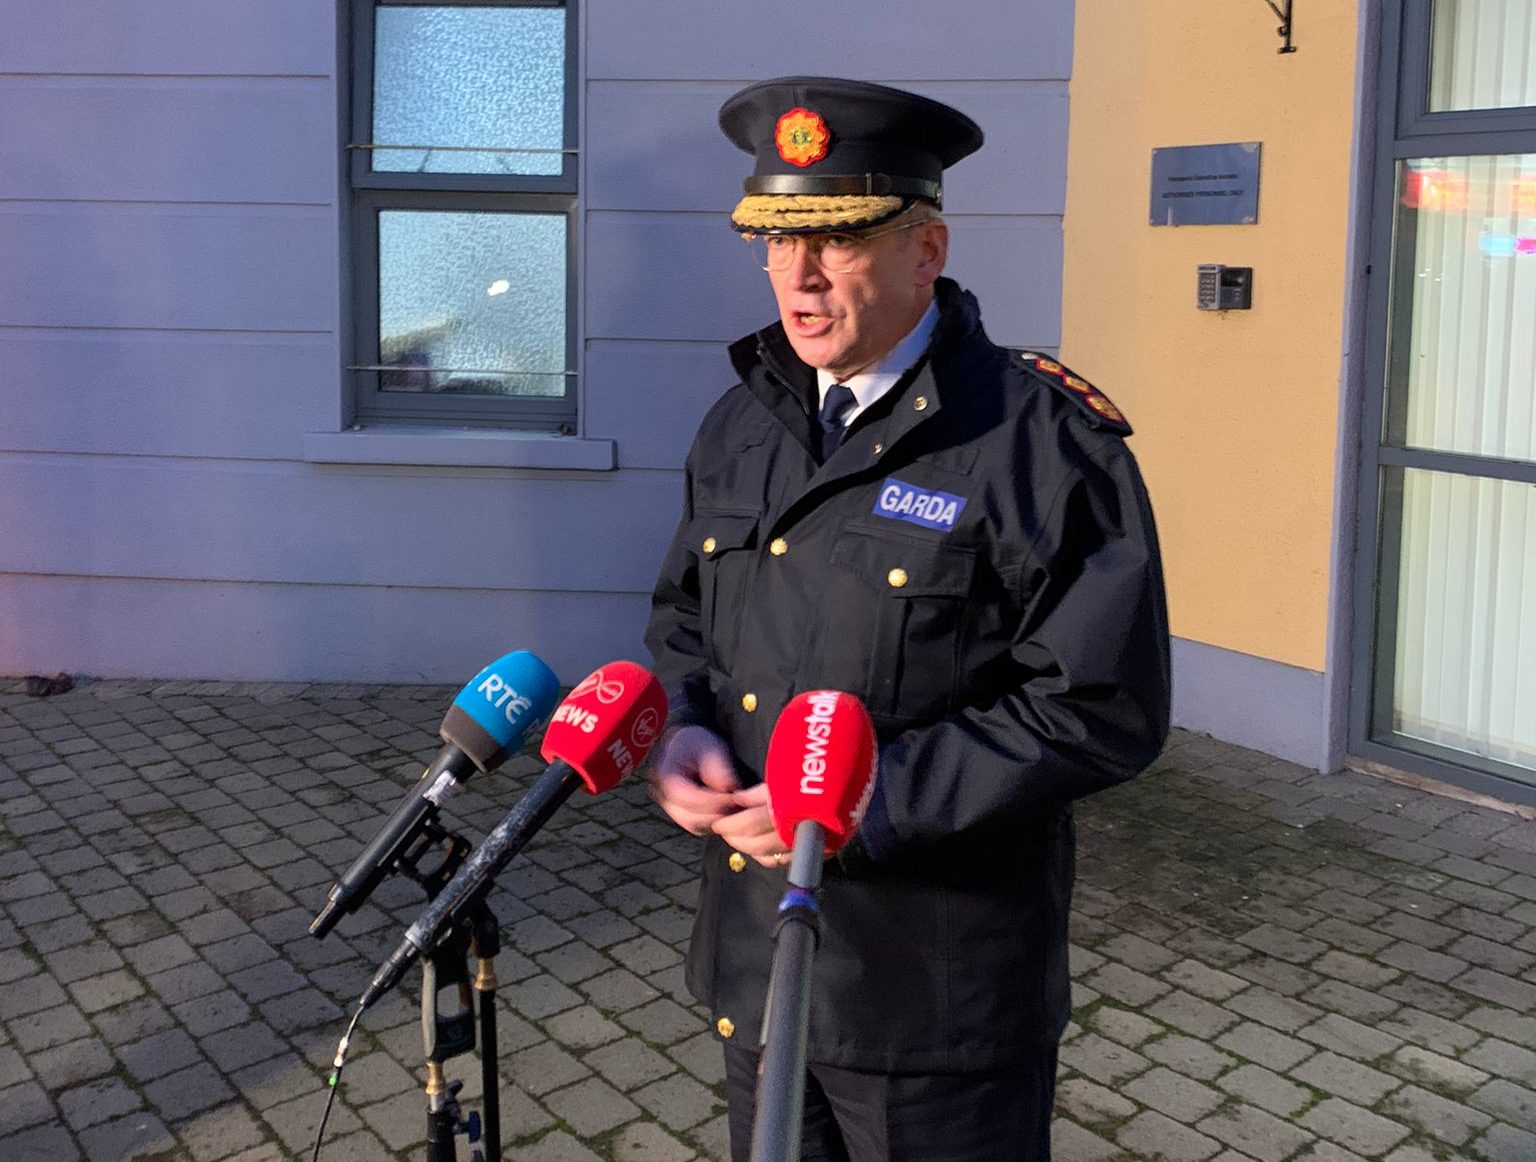 Garda Commissioner Drew Harris speaking to the media outside Tullamore Garda station